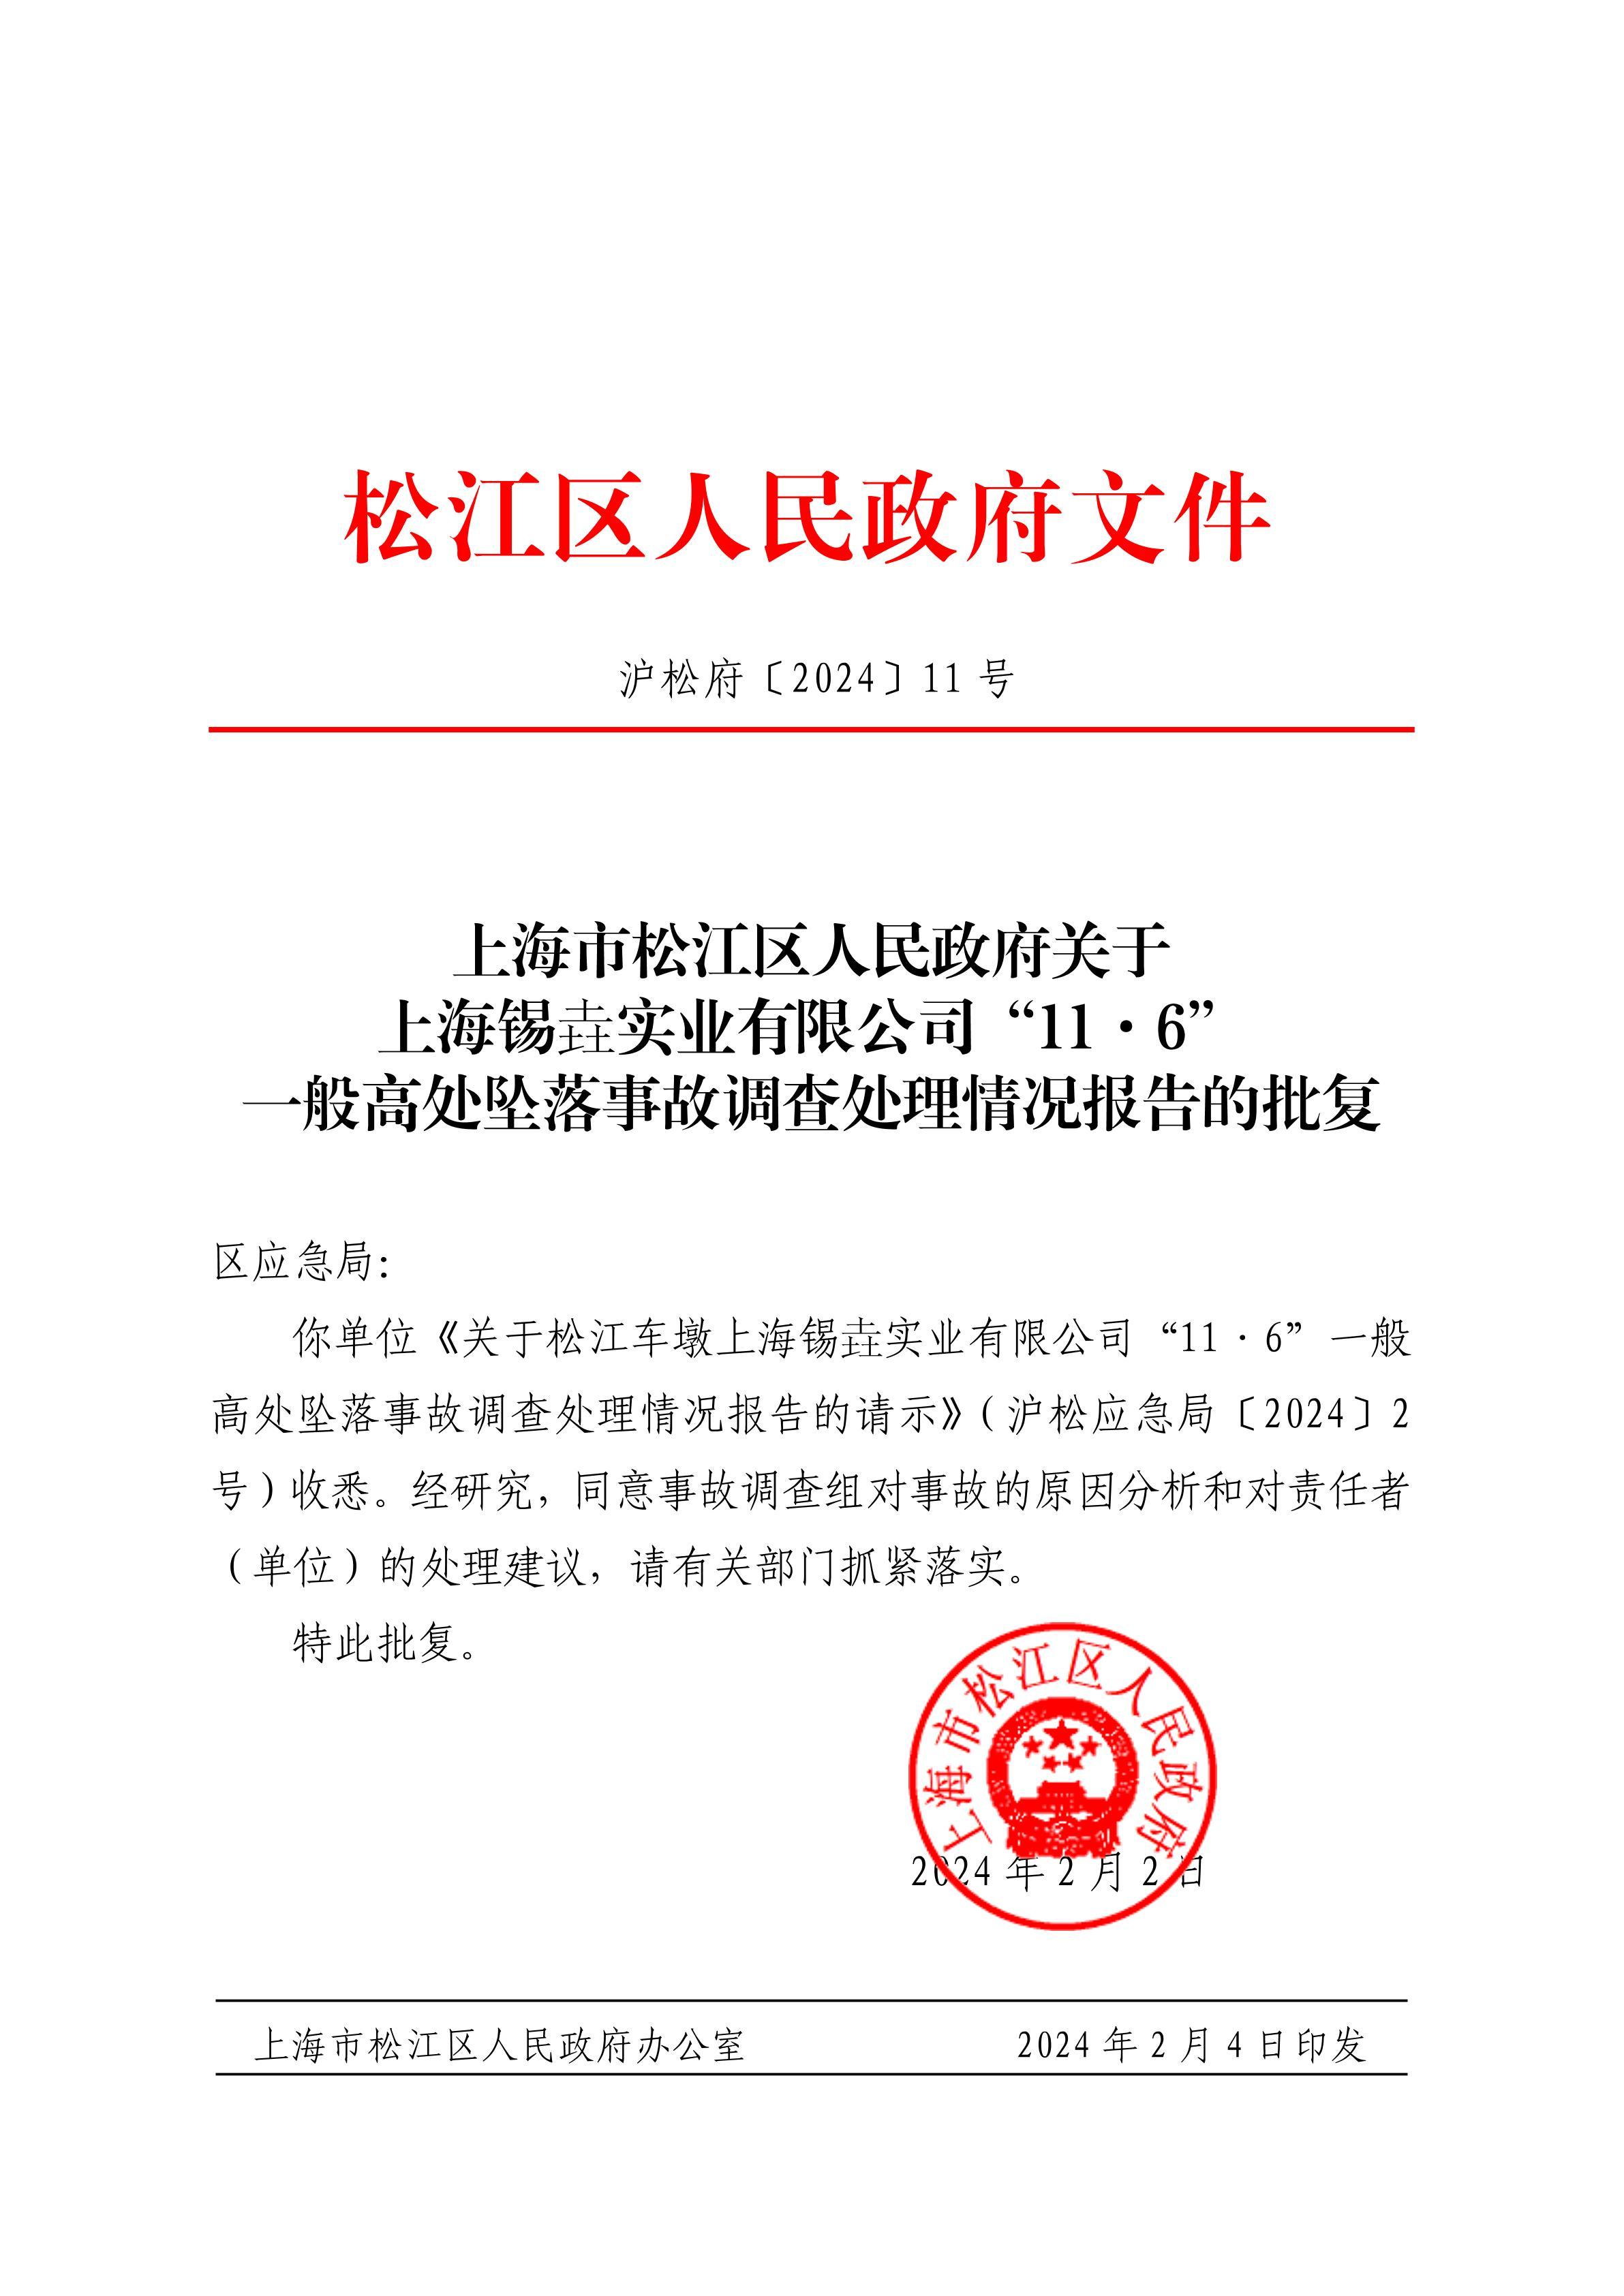 上海锡垚实业有限公司因发生一起生产安全责任事故被罚30万元